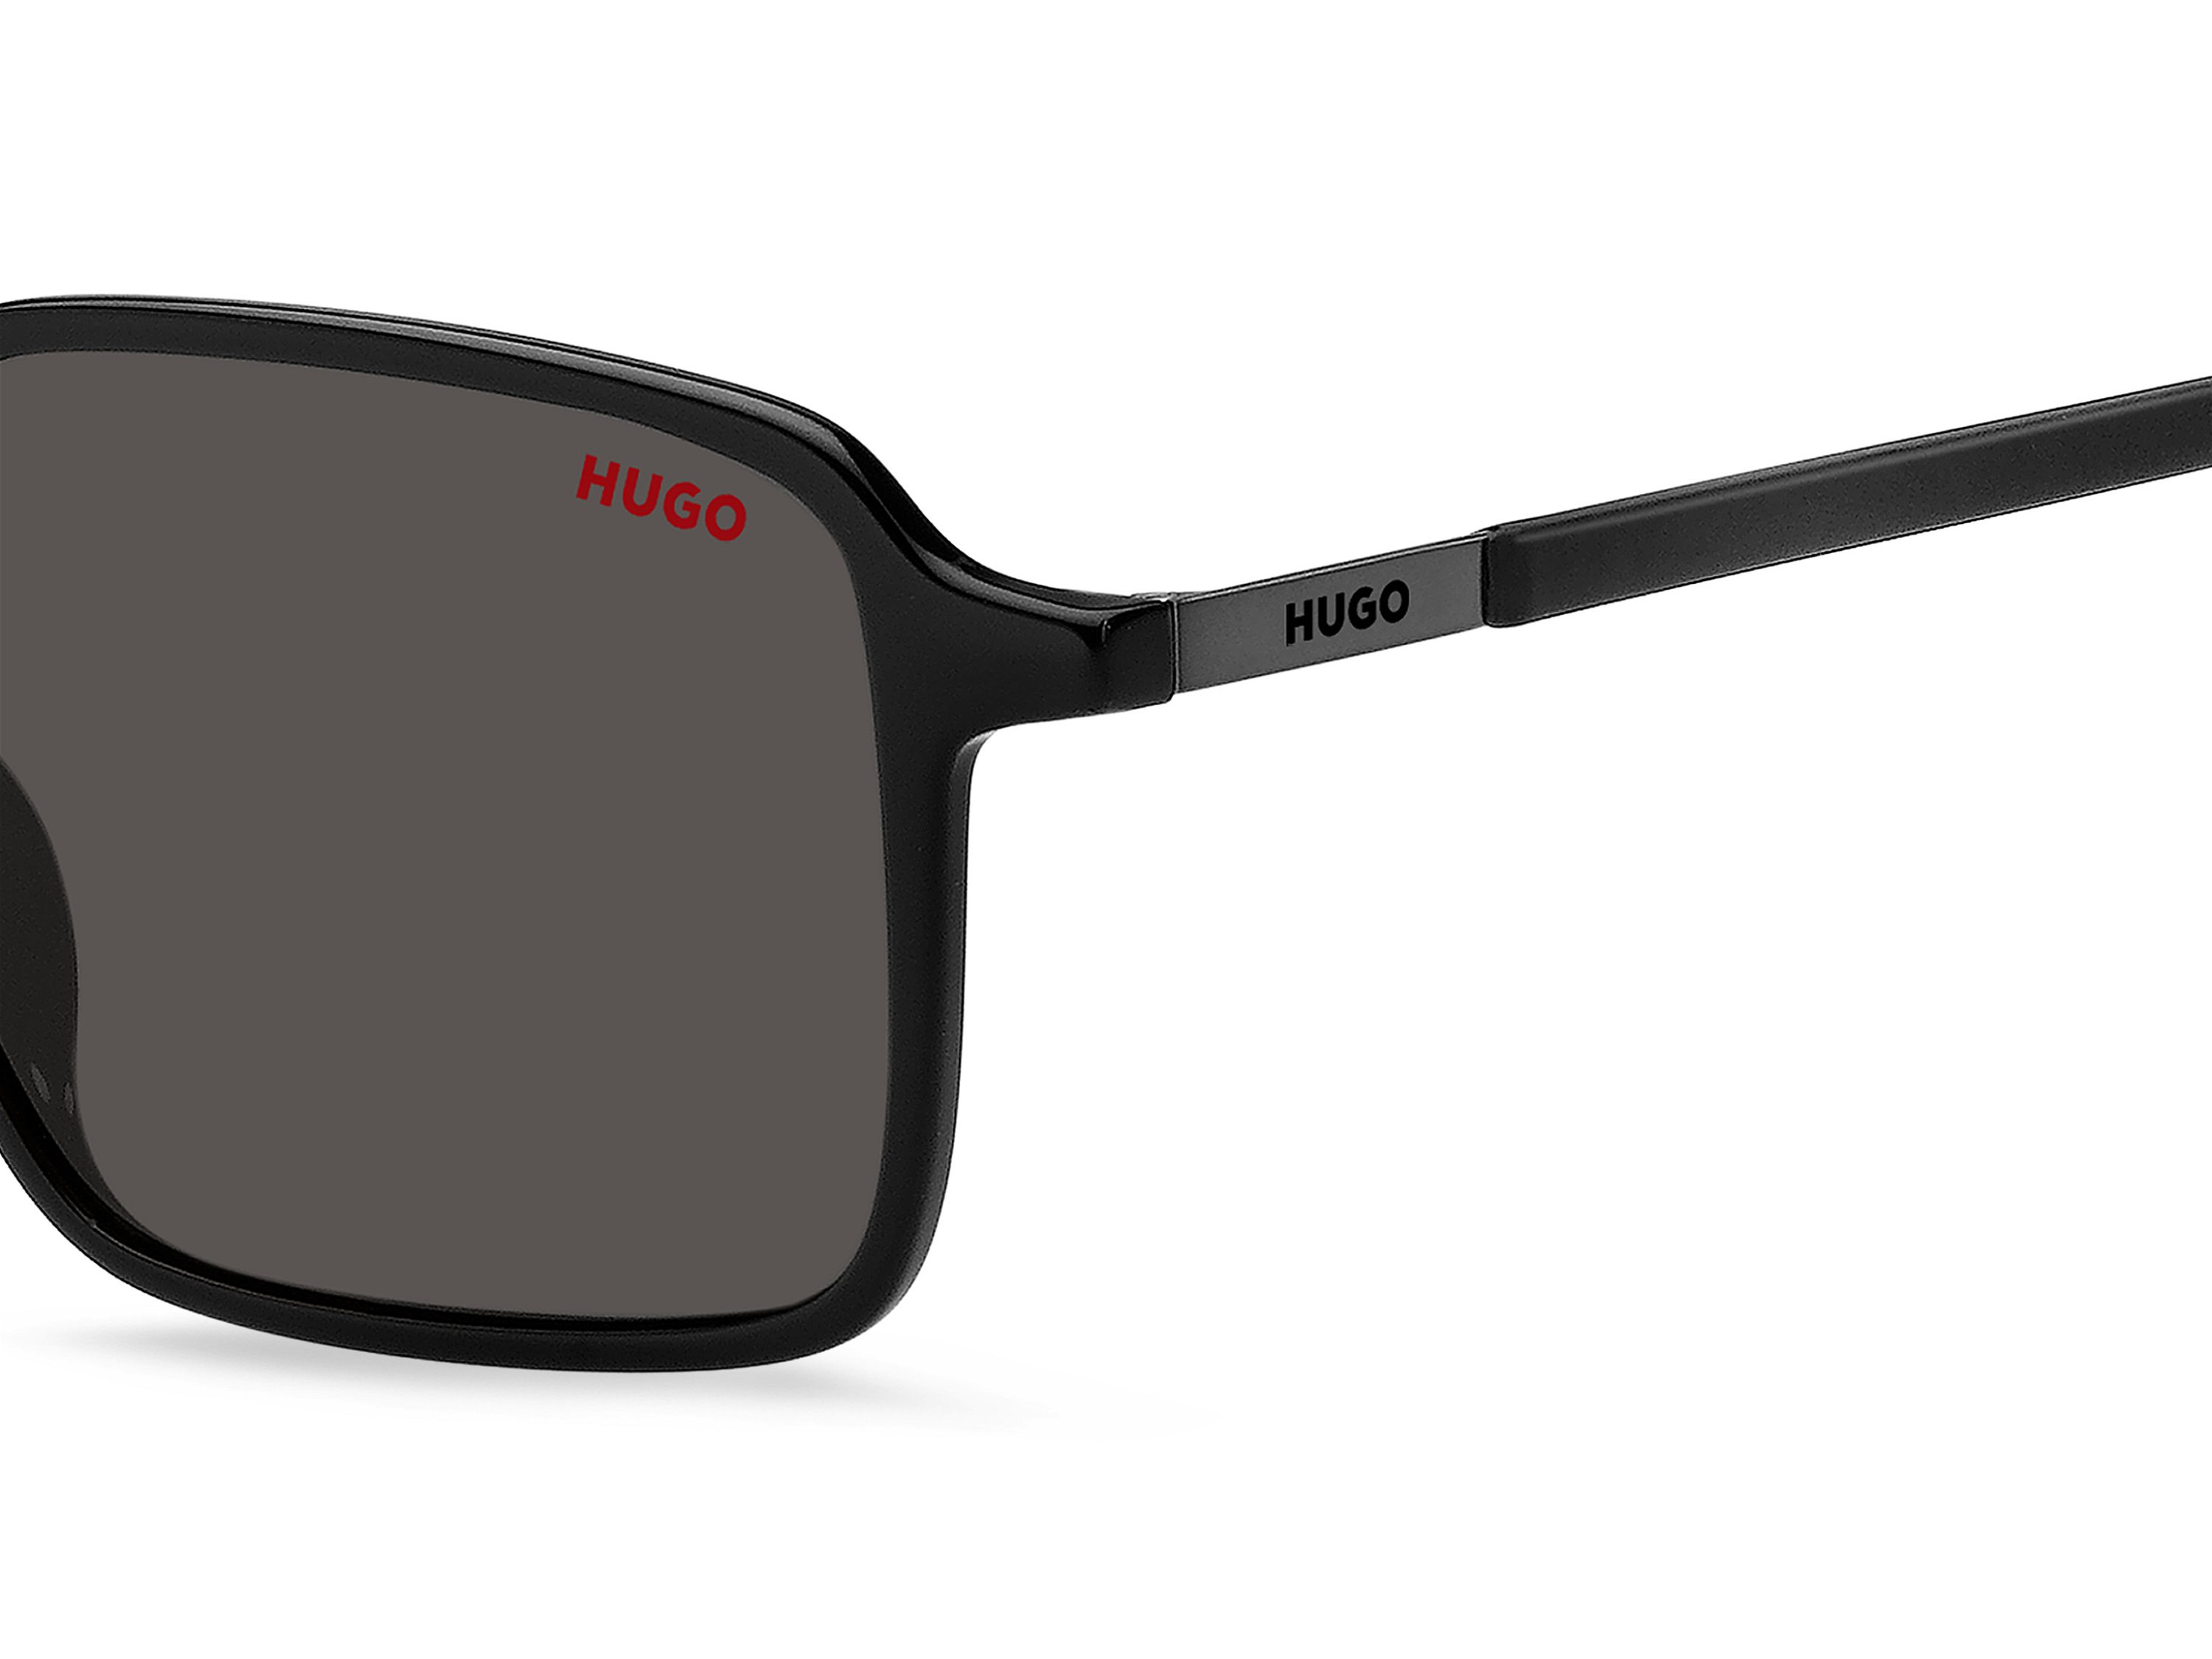 Das Bild zeigt die Sonnenbrille HG1228/S 807 von der Marke Hugo in schwarz.